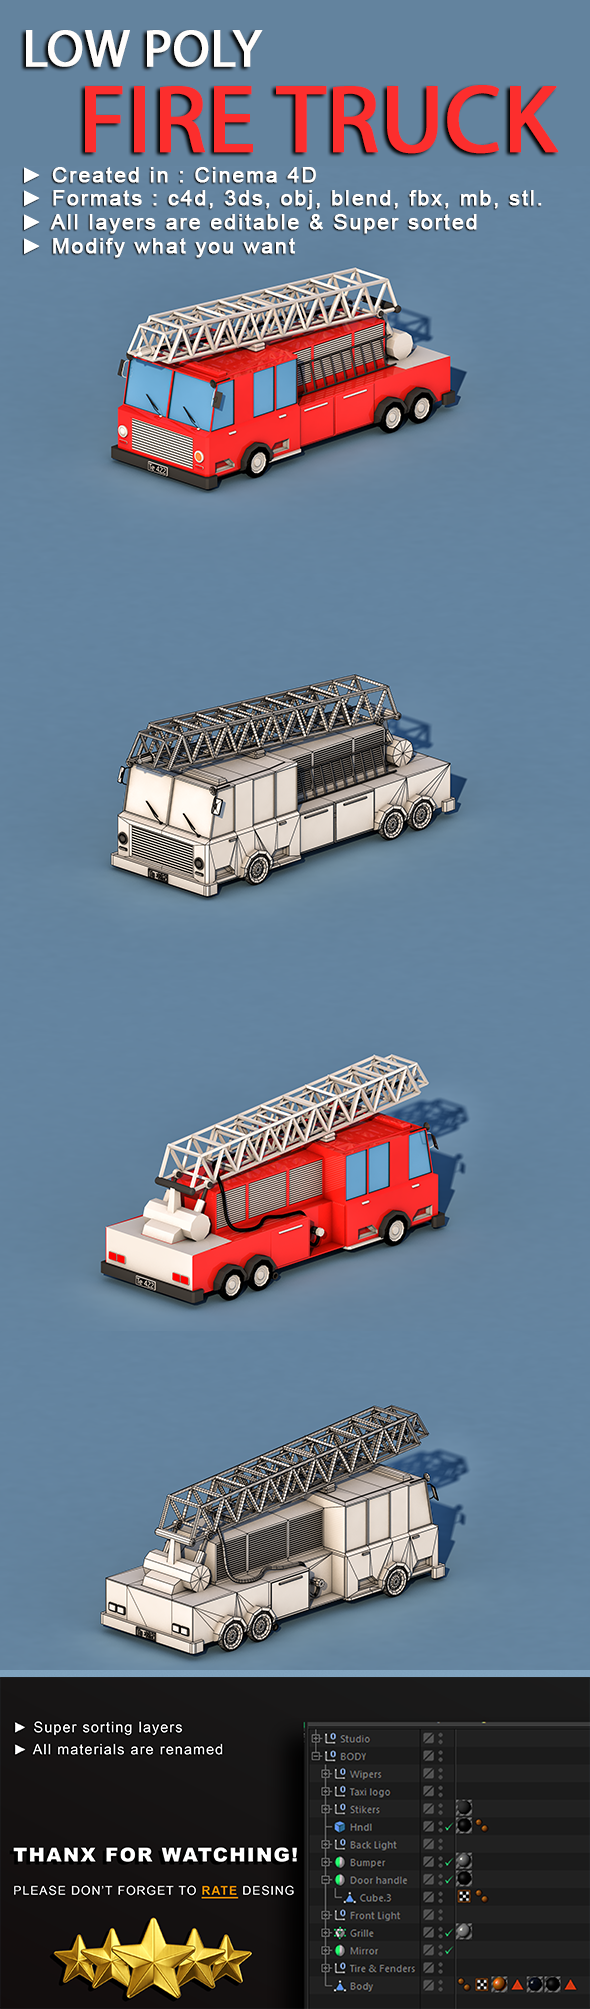 Cartoon Fire Truck - 3Docean 22935817